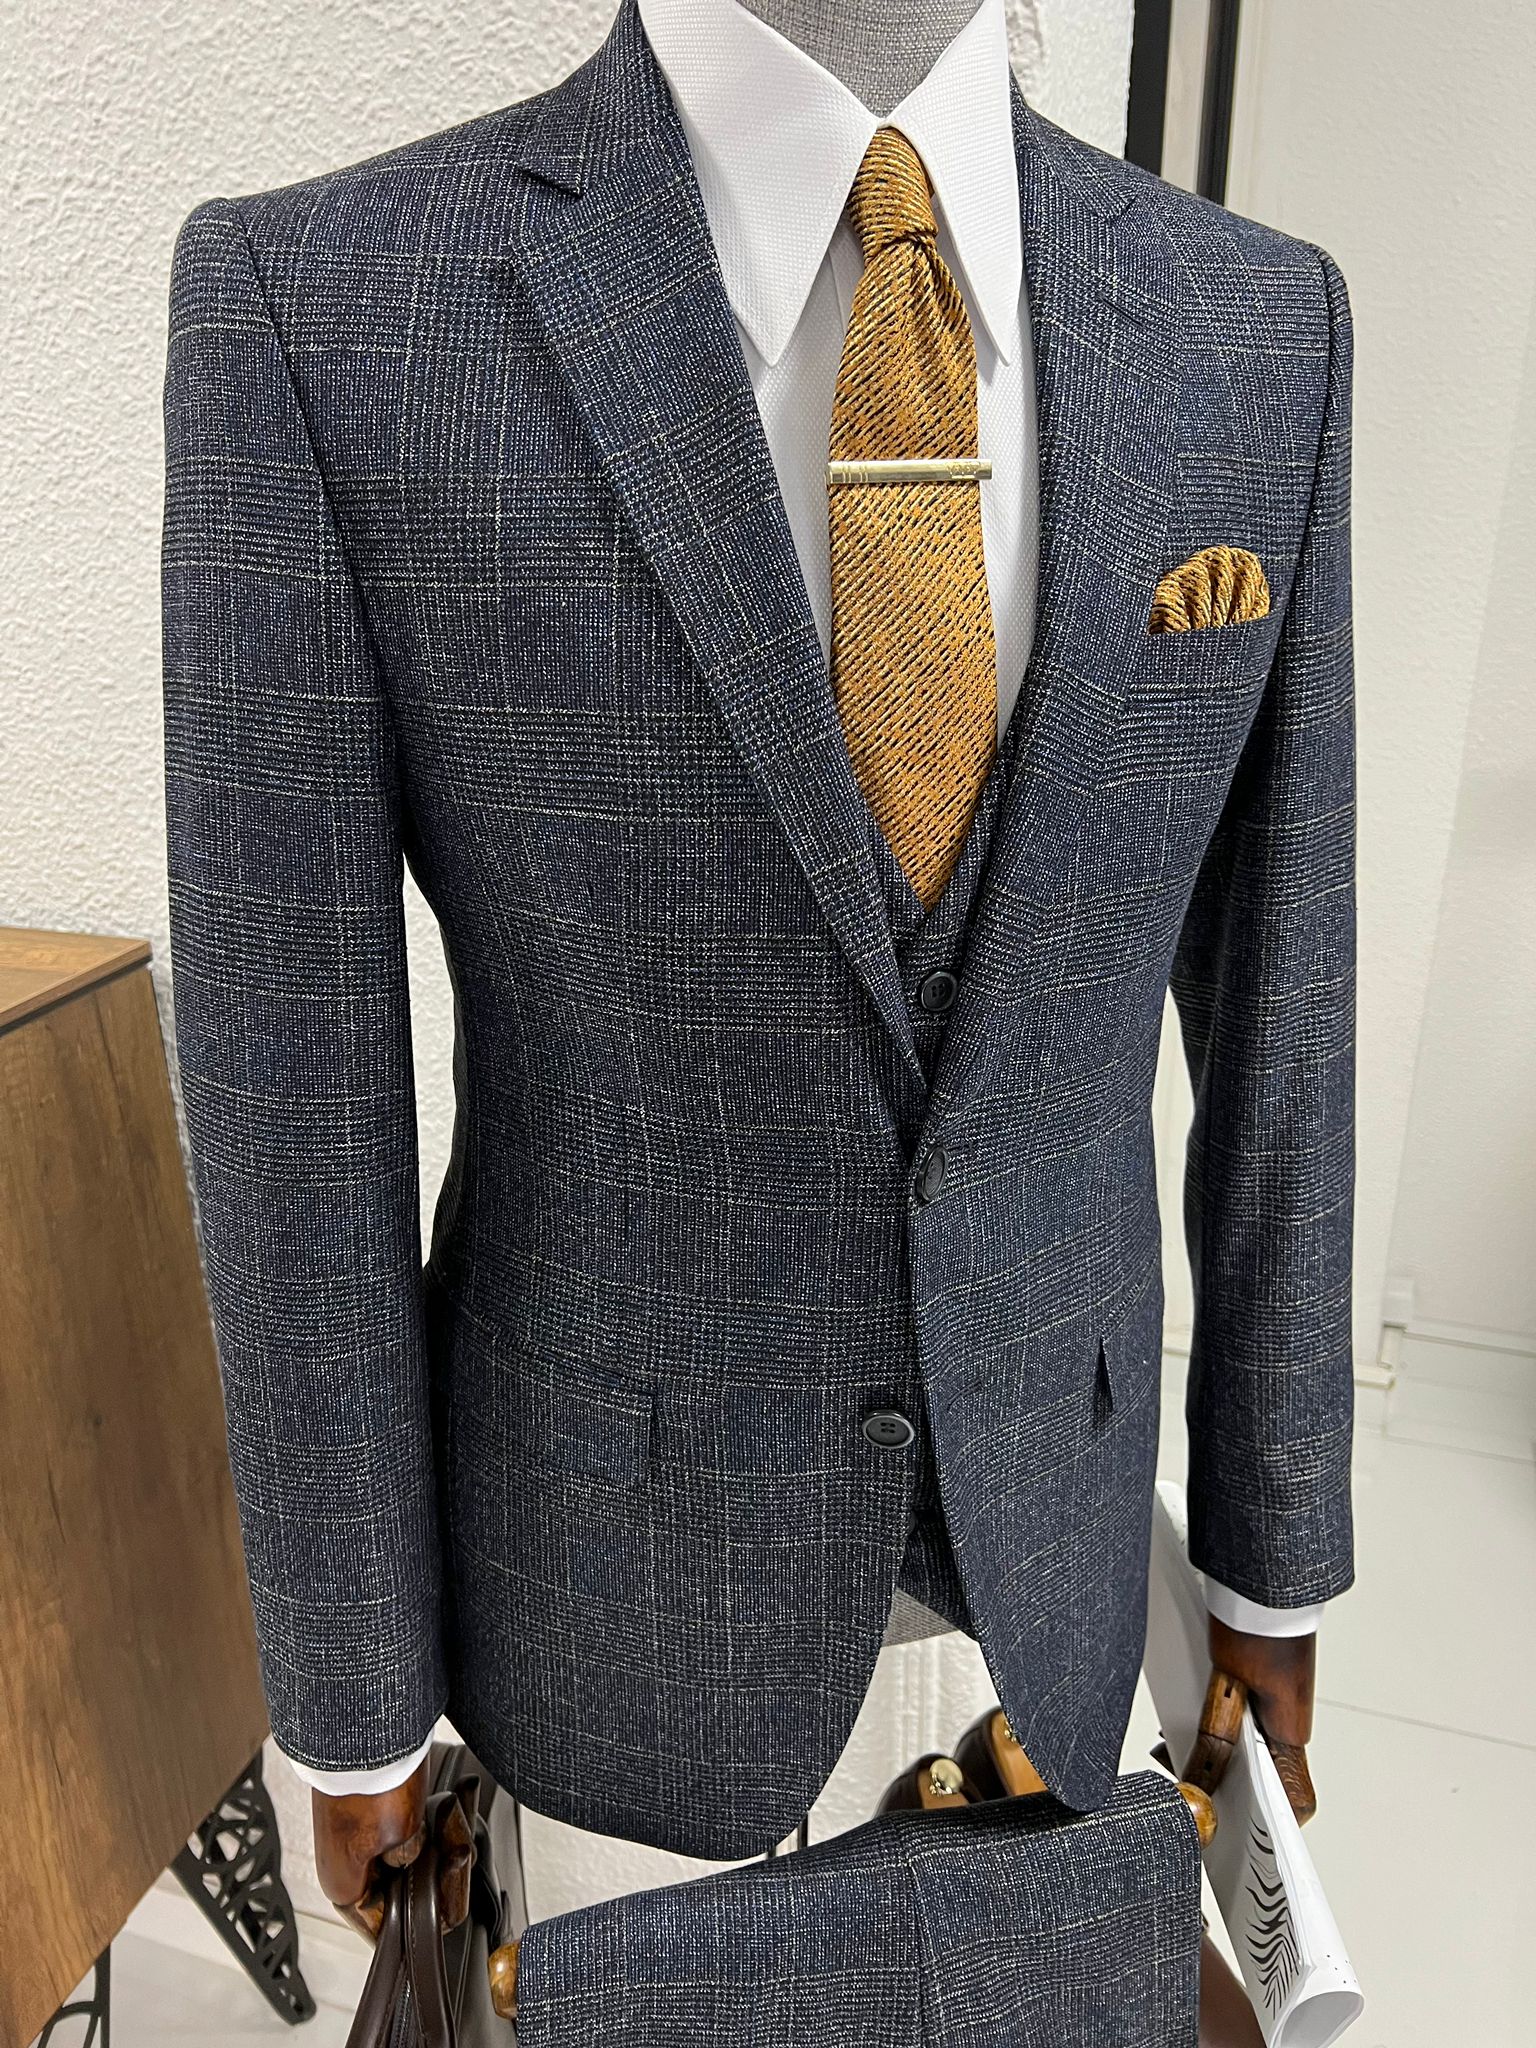 Louis Slim Fit High Quality Navy Plaid Suit